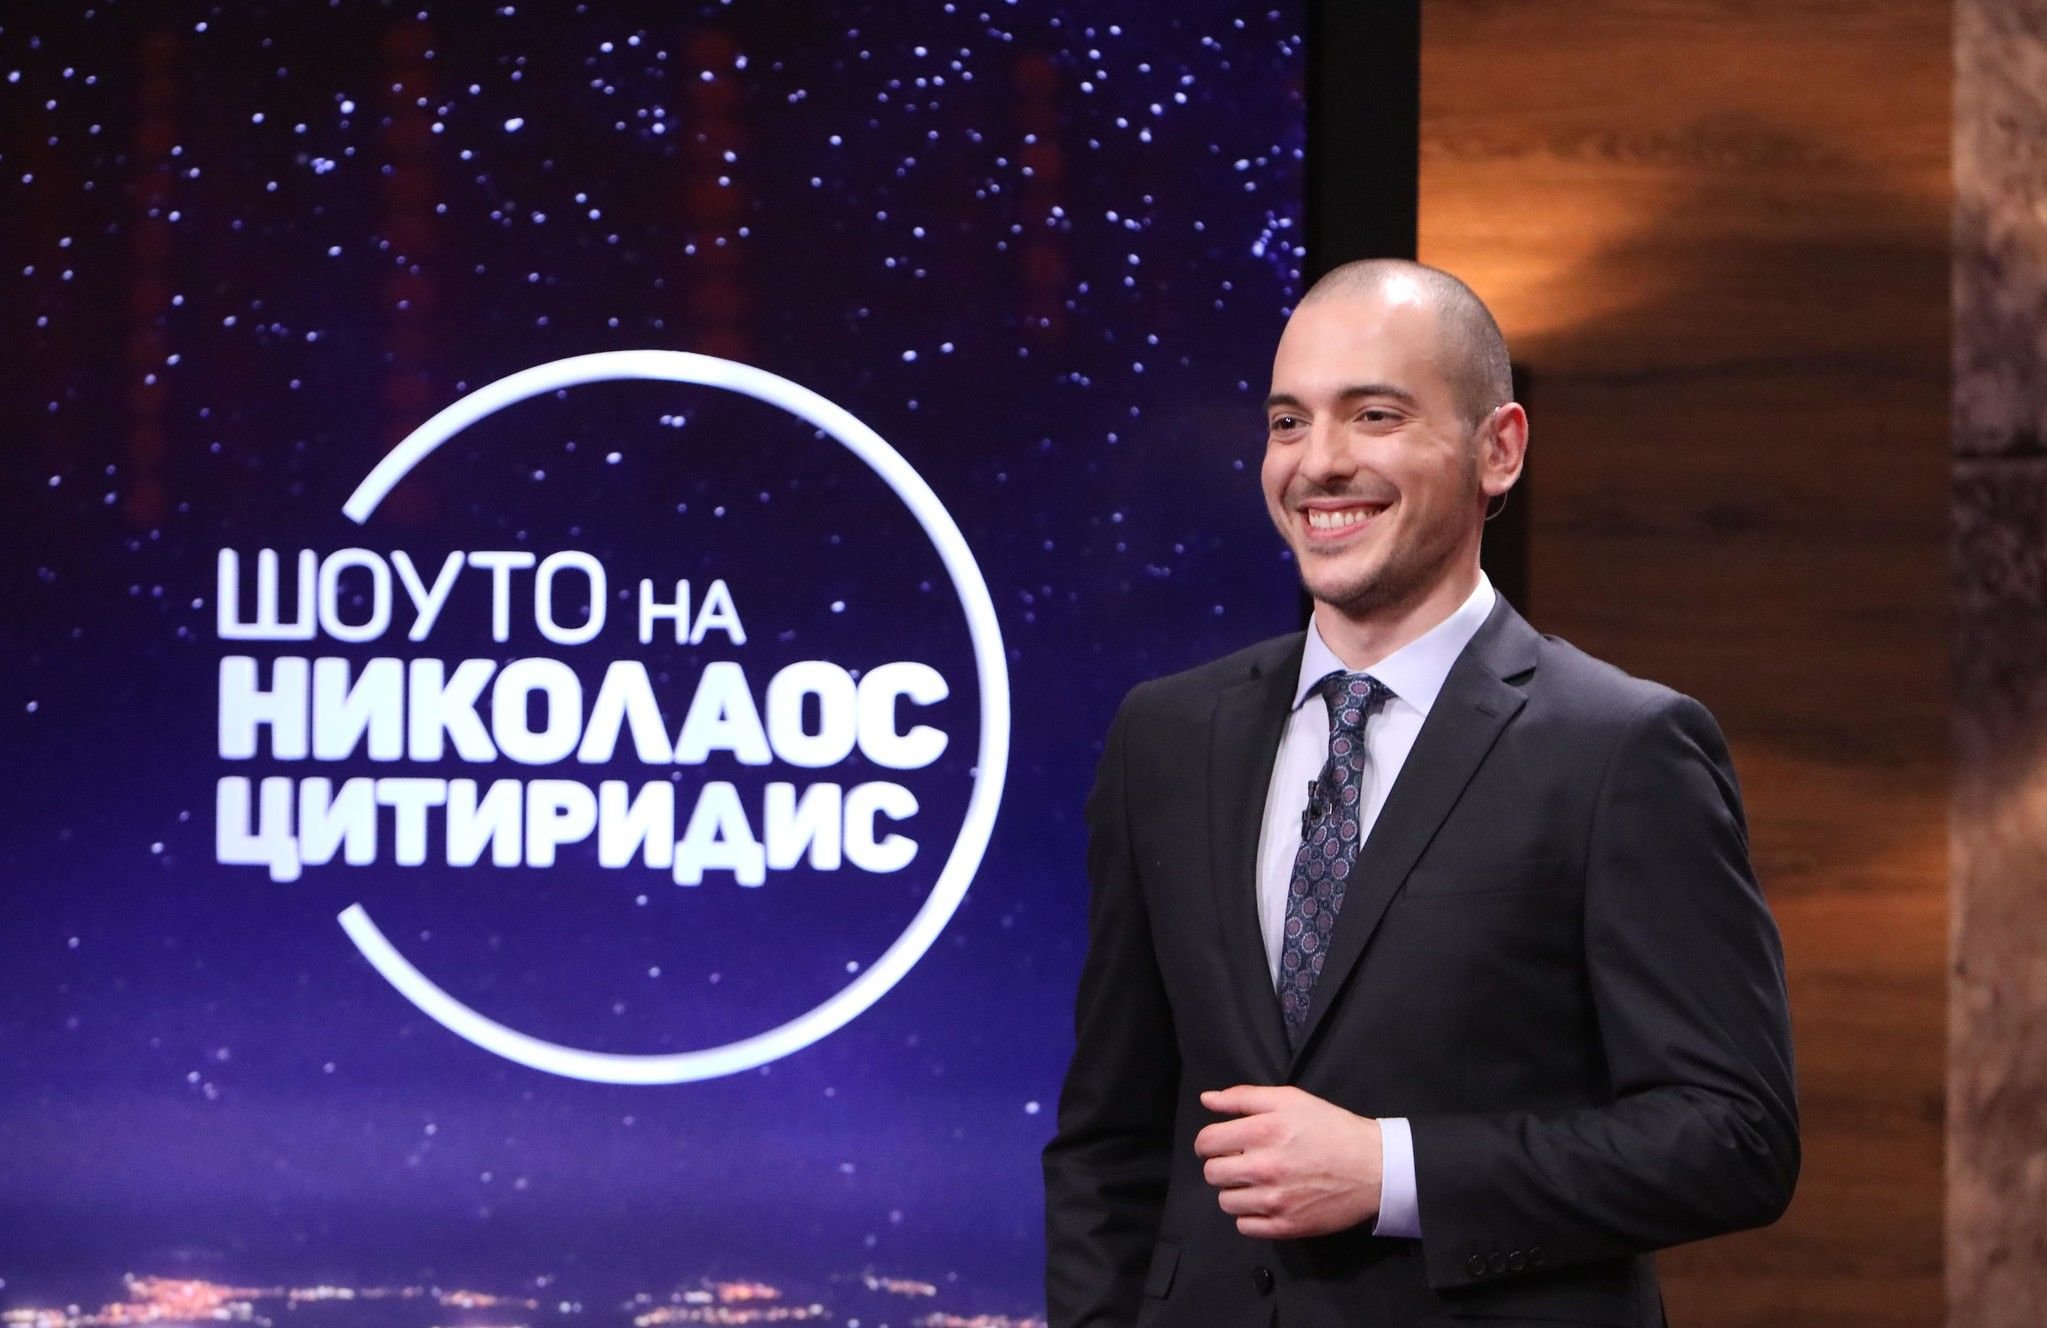 bTV обяви дали "Шоуто на Николаос Цитиридис" ще продължи и наесен